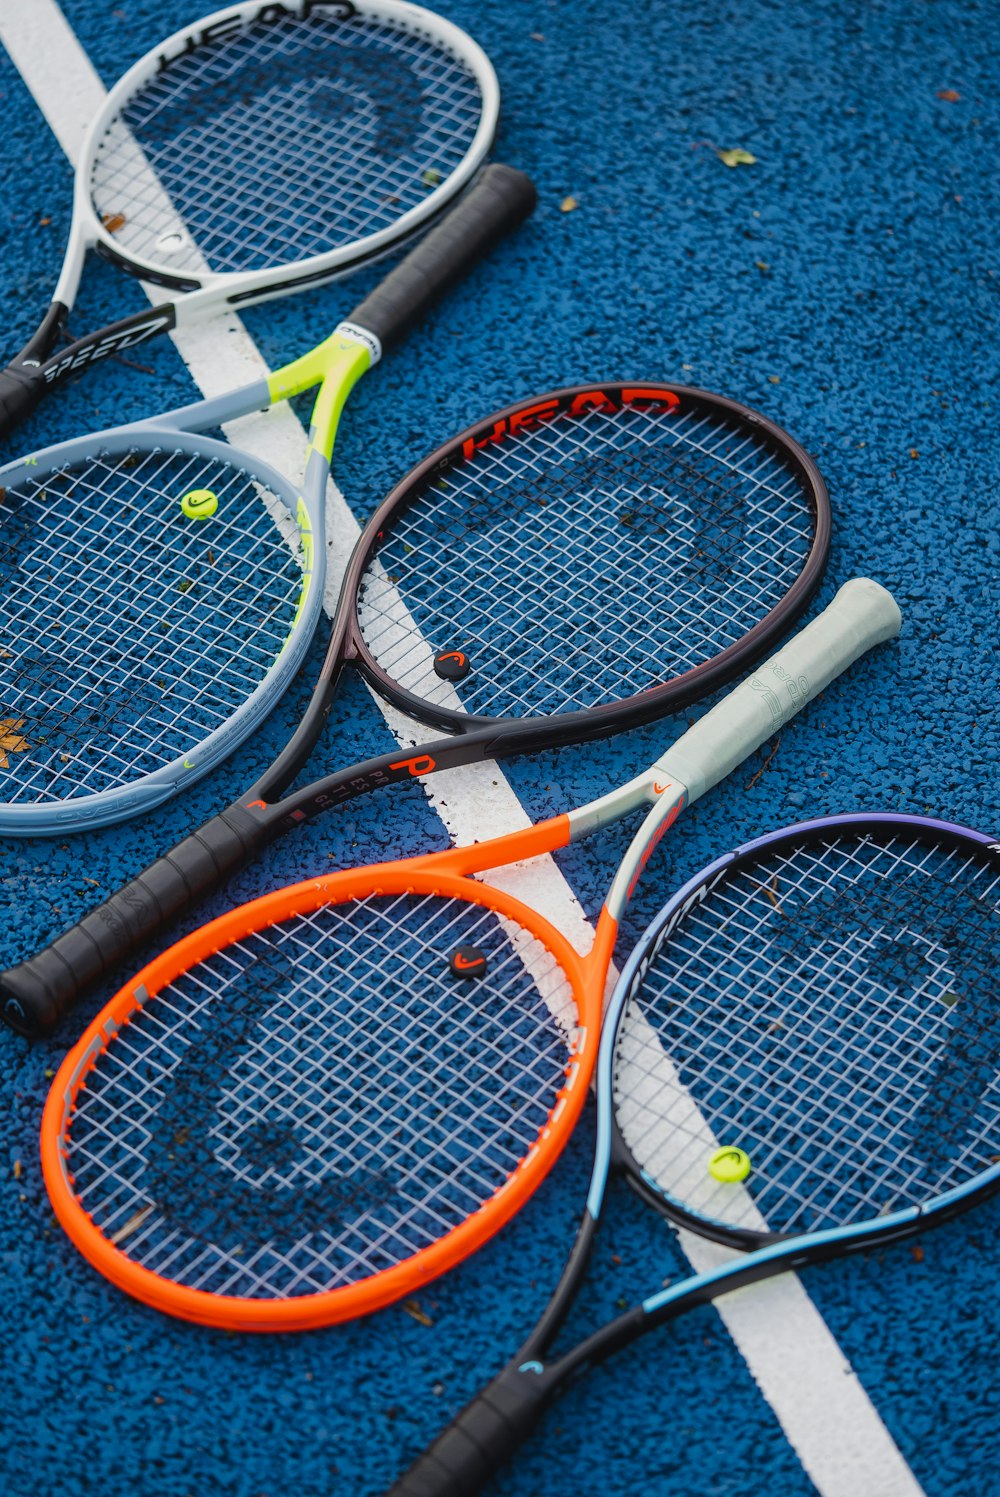 テニスコートに置かれた3つのテニスラケット